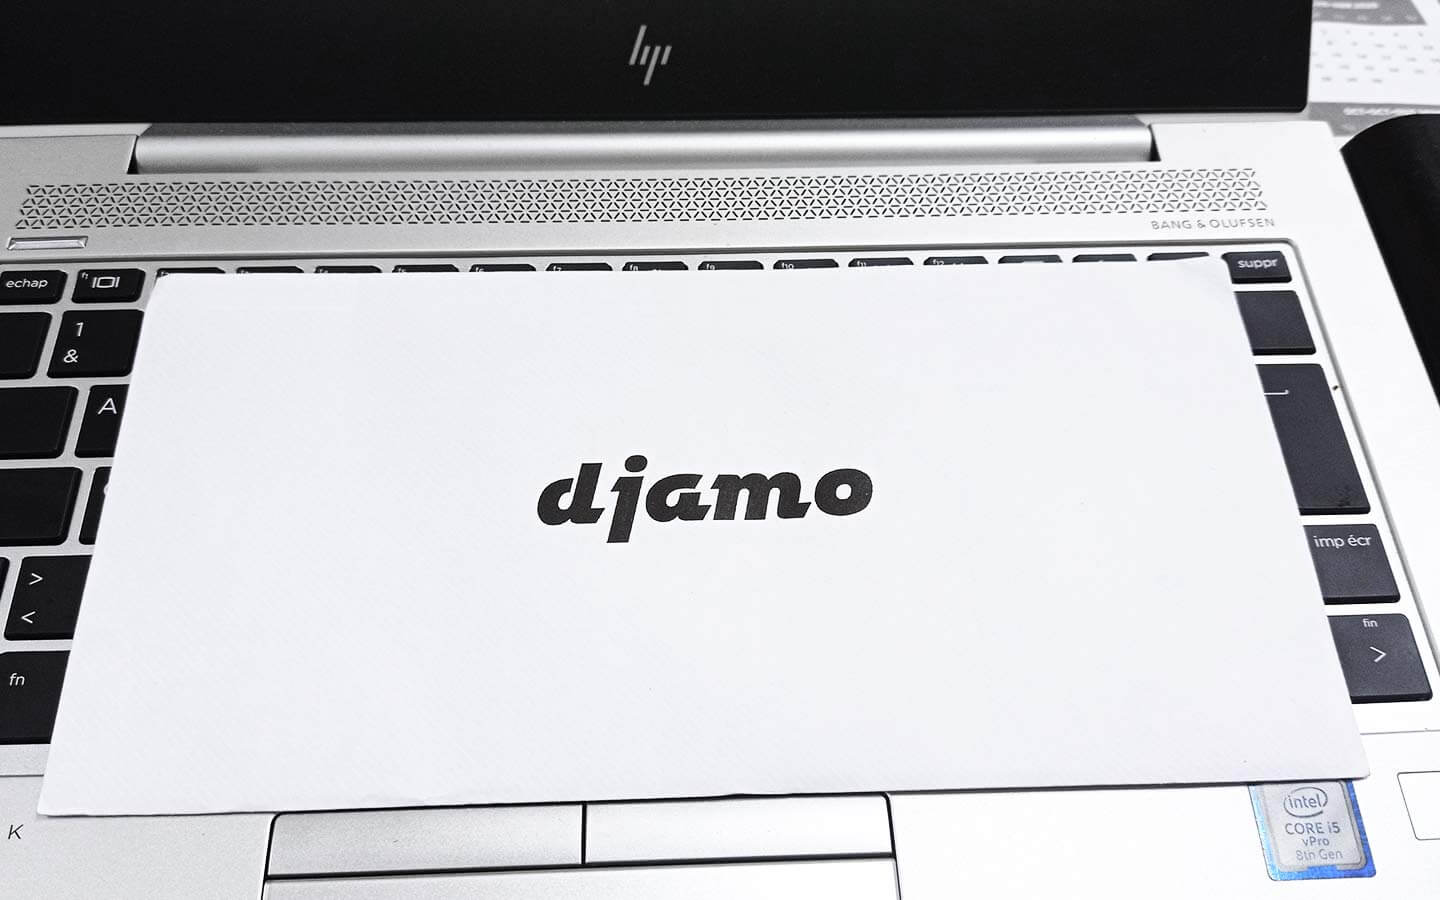 La nouvelle carte prépayée Djamo vaut-elle vraiment le coup ?